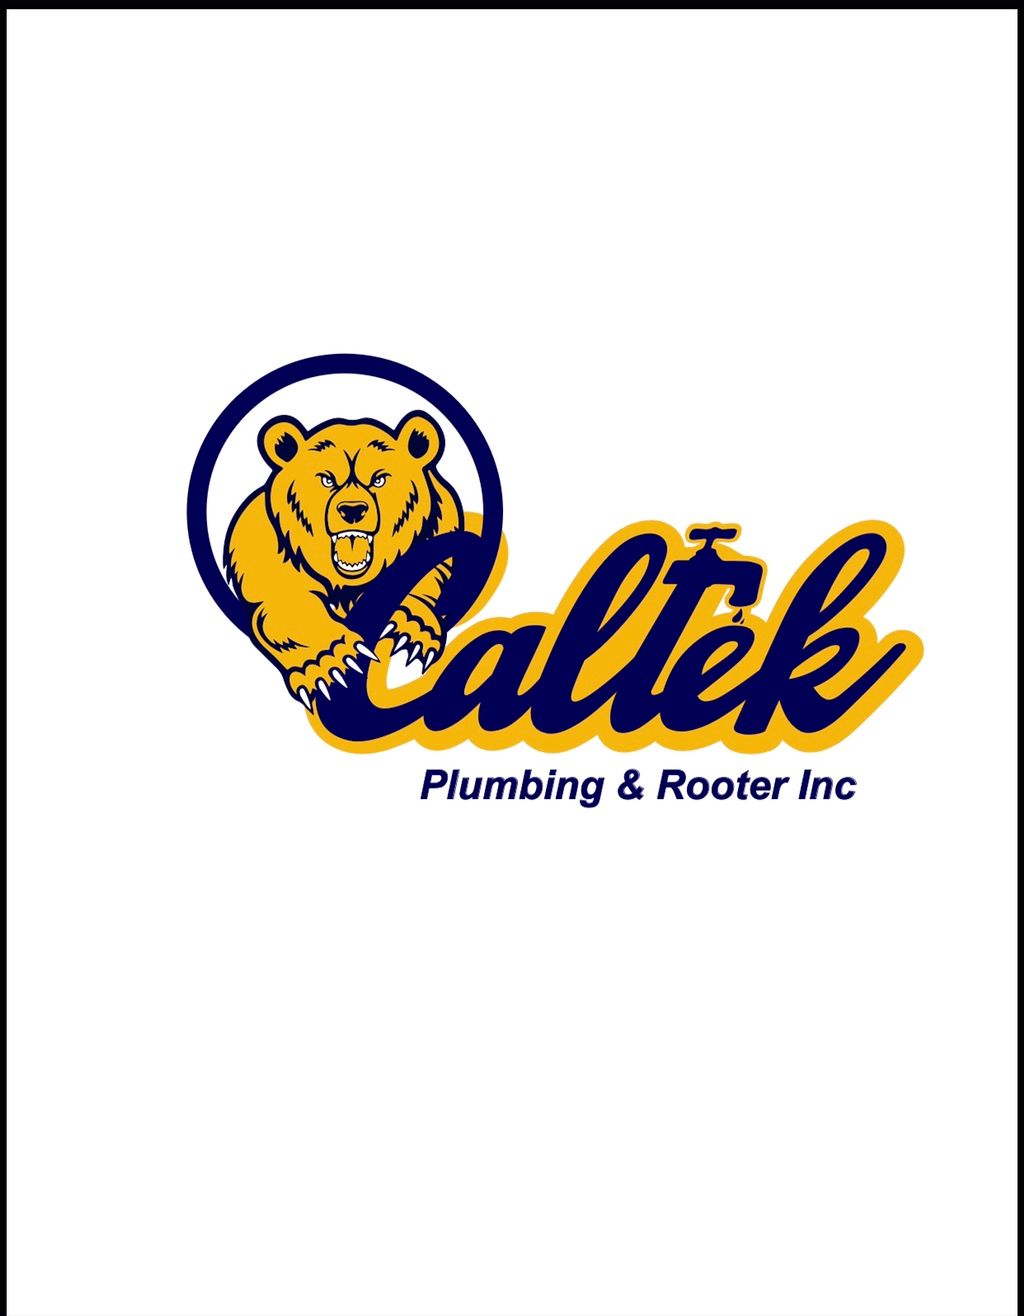 Caltek Plumbing & Rooter Inc